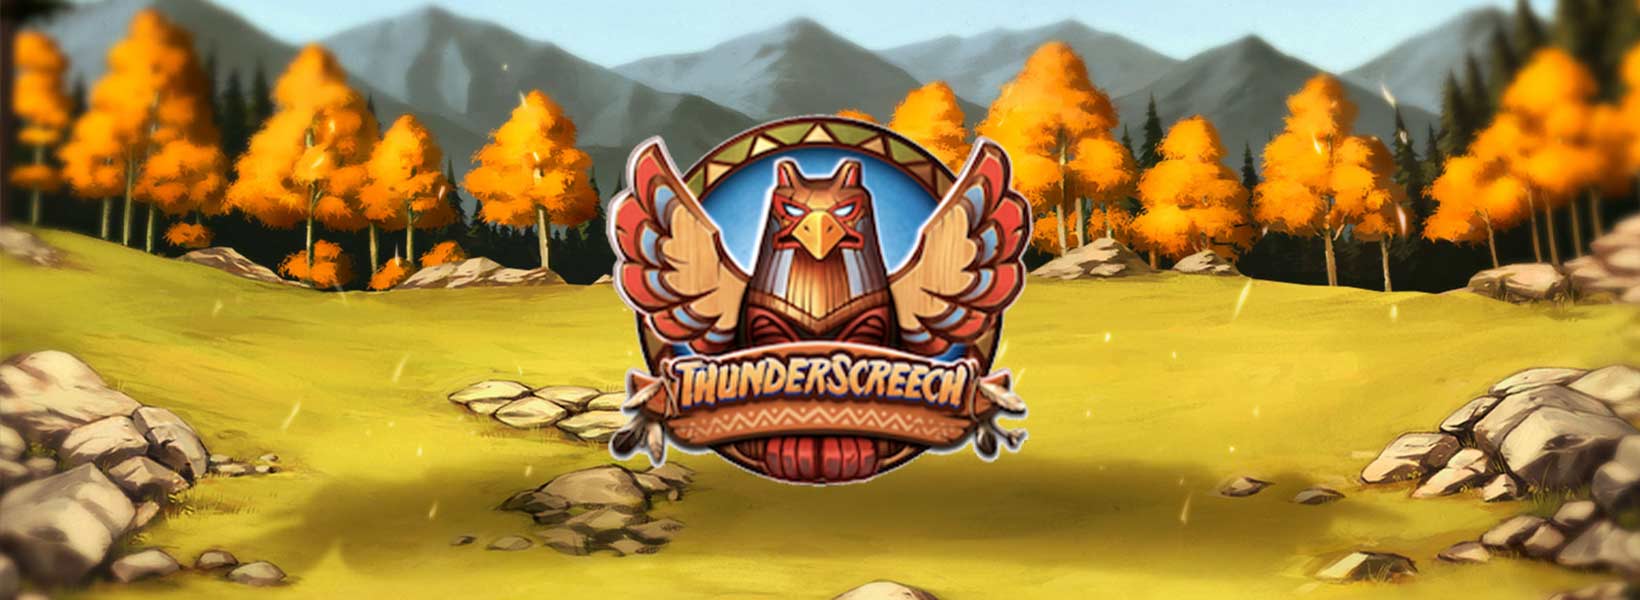 Thunder Screech Slot online